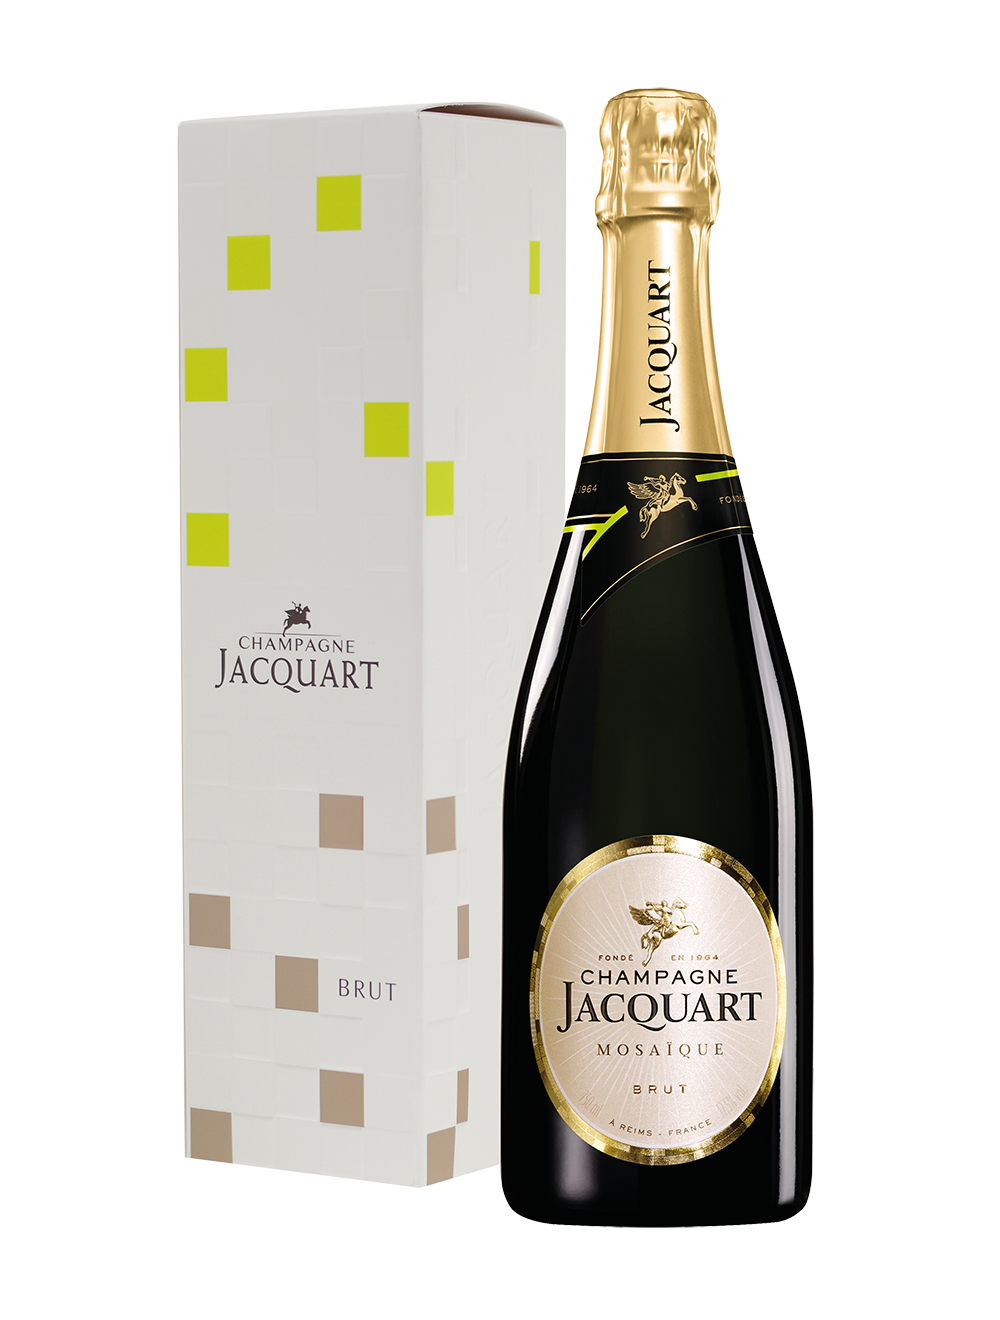 Wiegen Luchtpost uitdrukking Champagne Jacquart Mosaïque brut | Voordelig online Champagne kopen |  Online Champagneshop met ruime keuze mousserende wijnen